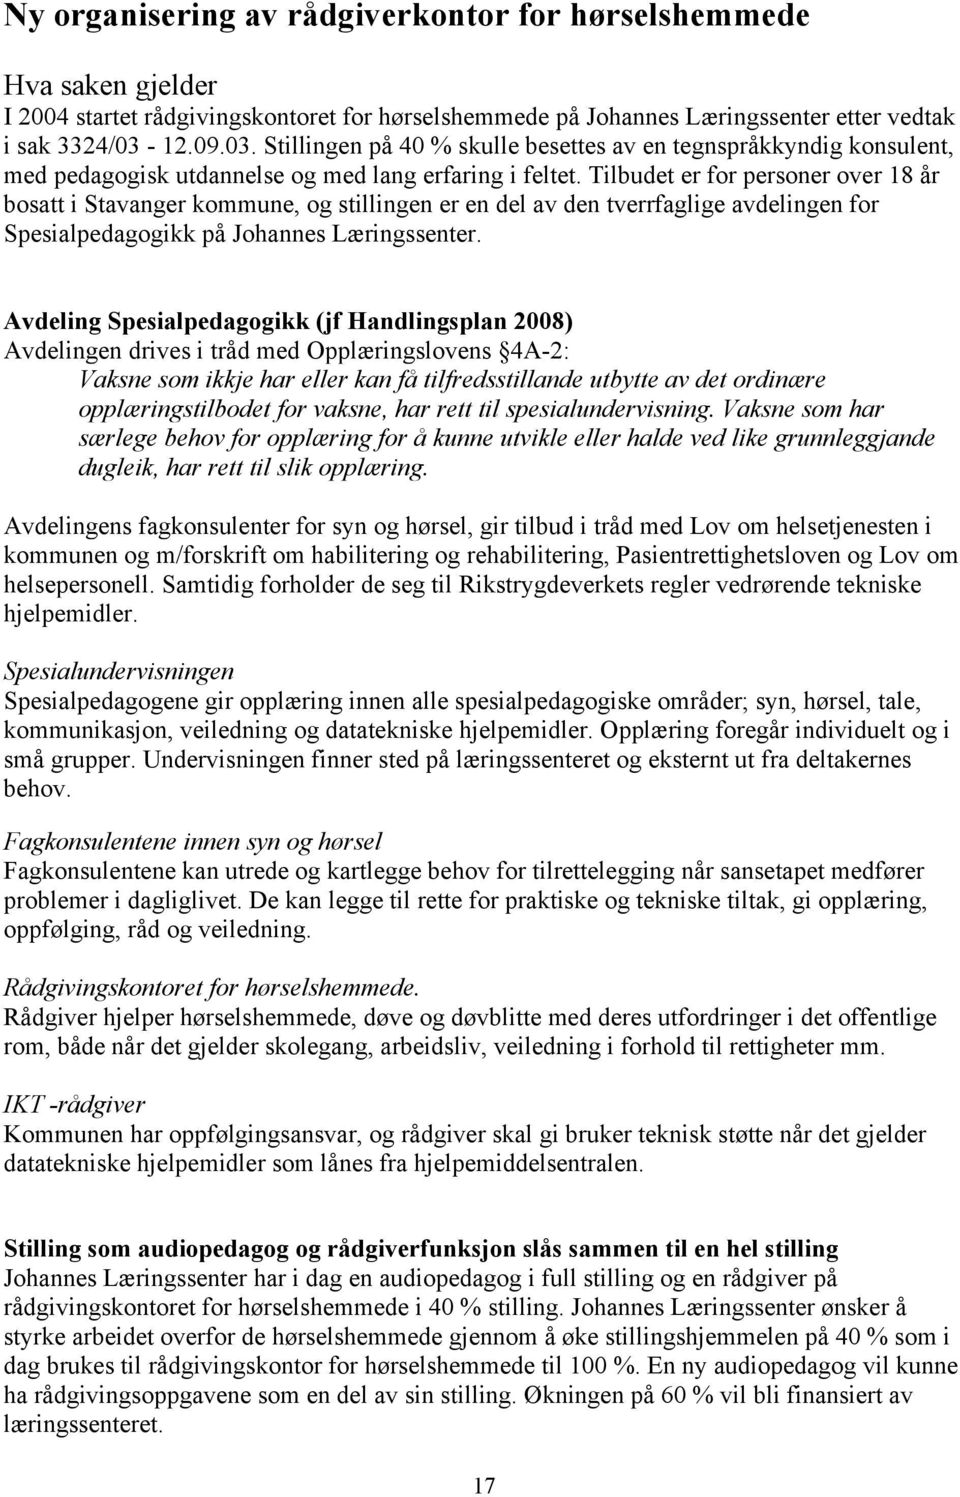 Tilbudet er for personer over 18 år bosatt i Stavanger kommune, og stillingen er en del av den tverrfaglige avdelingen for Spesialpedagogikk på Johannes Læringssenter.